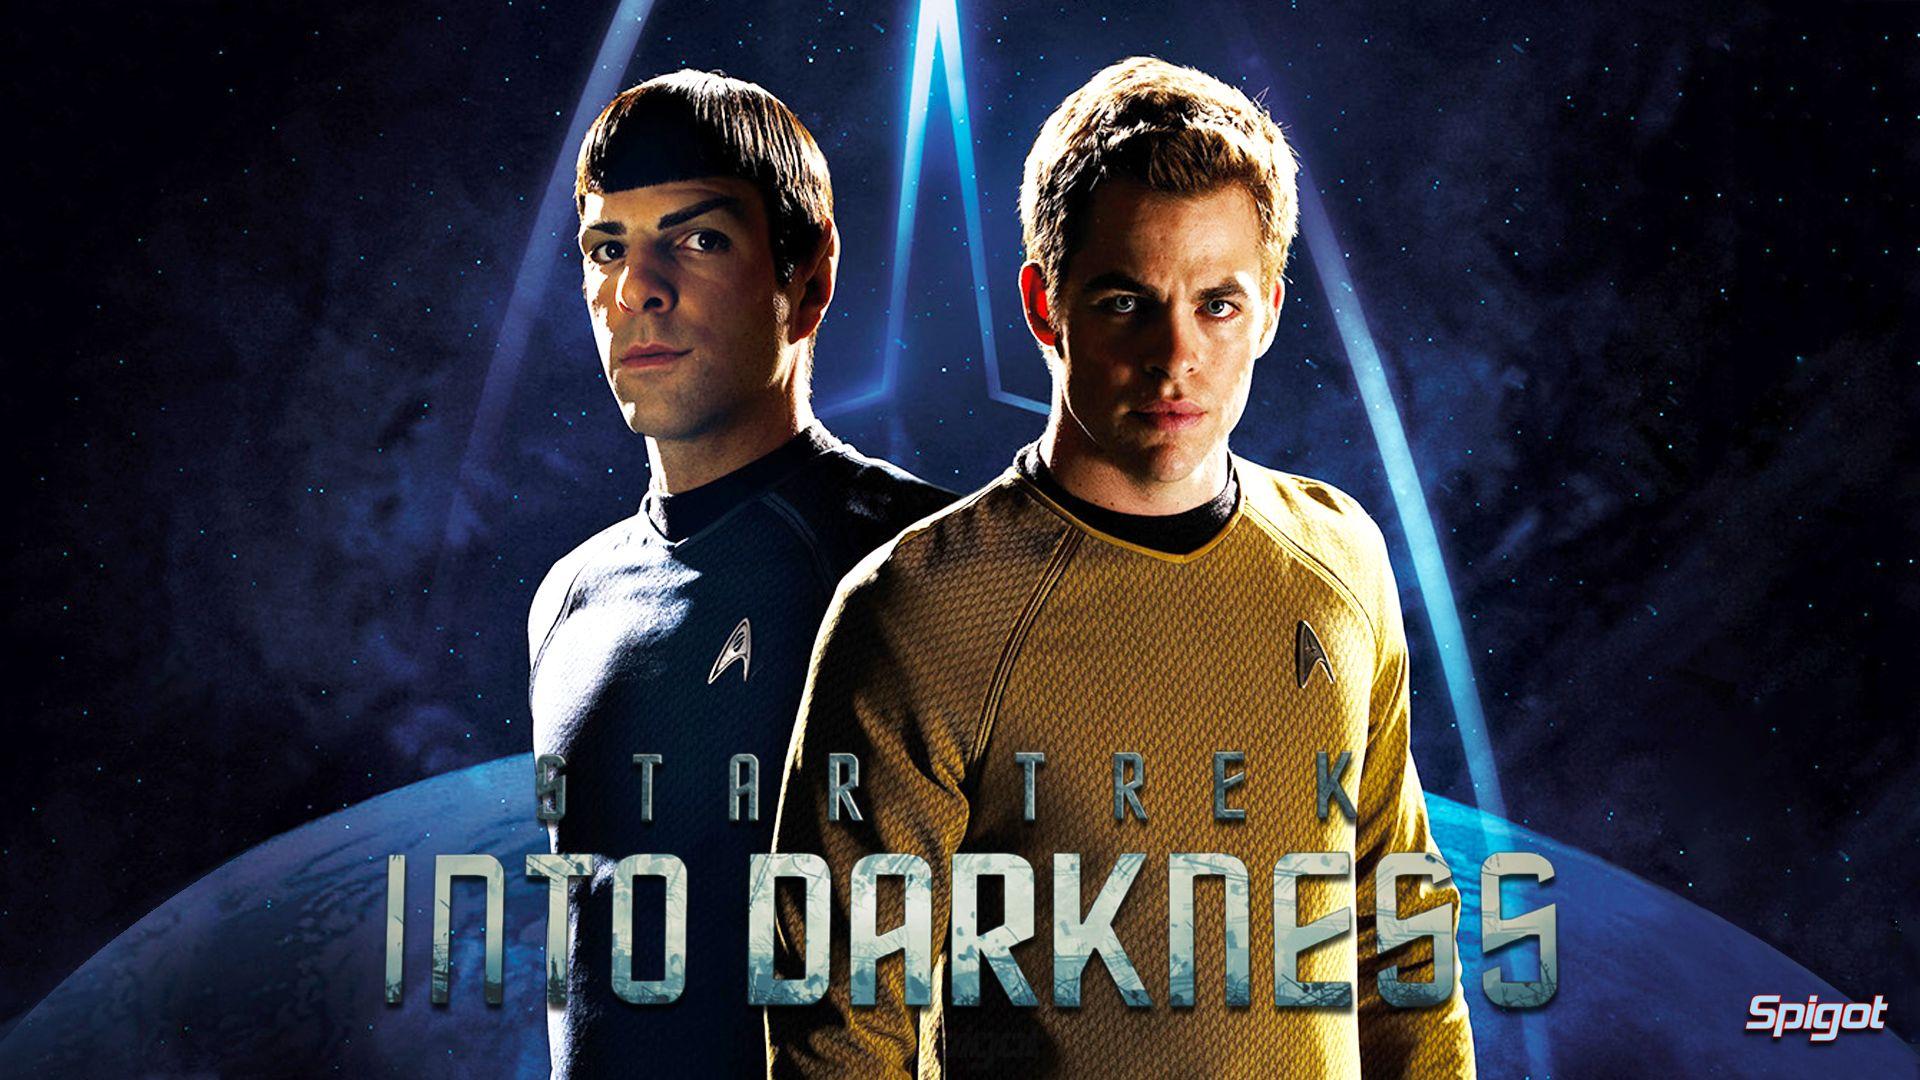 Star Trek Into Darkness. George Spigot's Blog